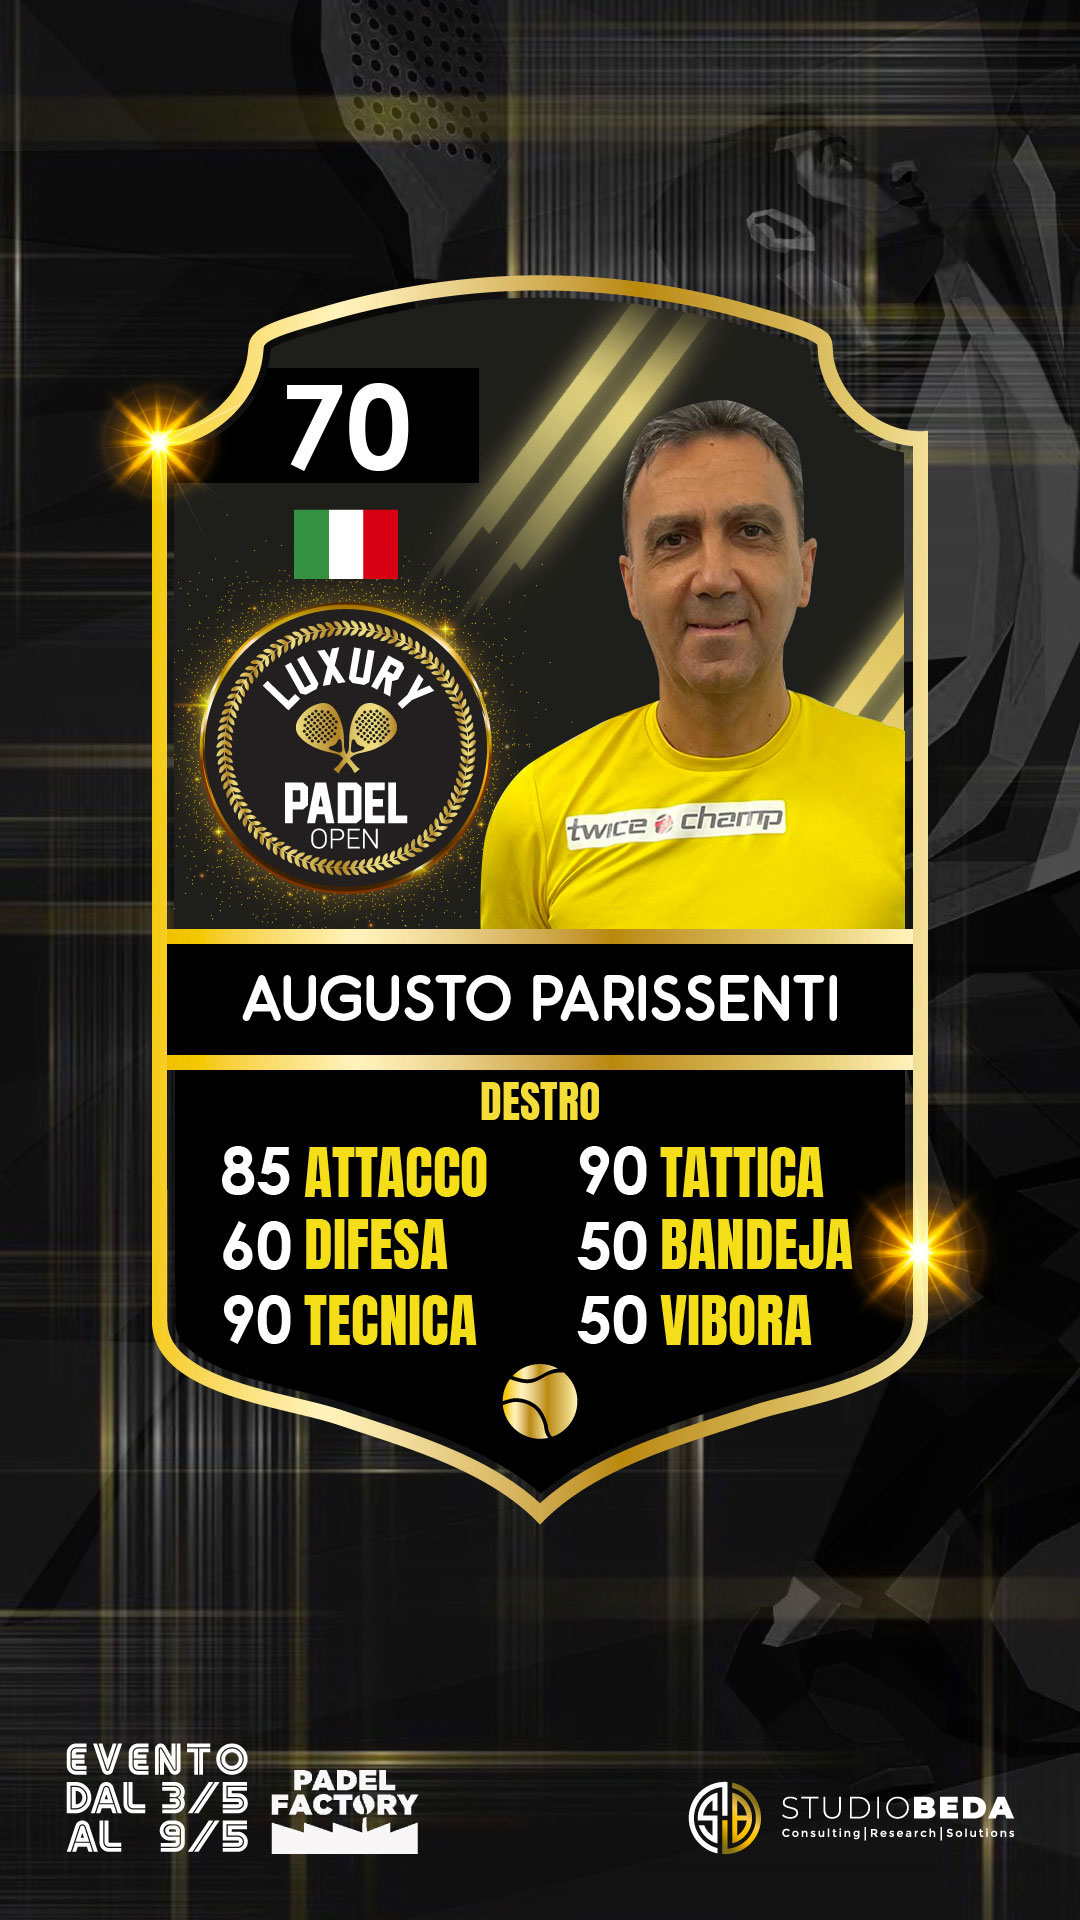 Augusto-Parissenti_GOLD